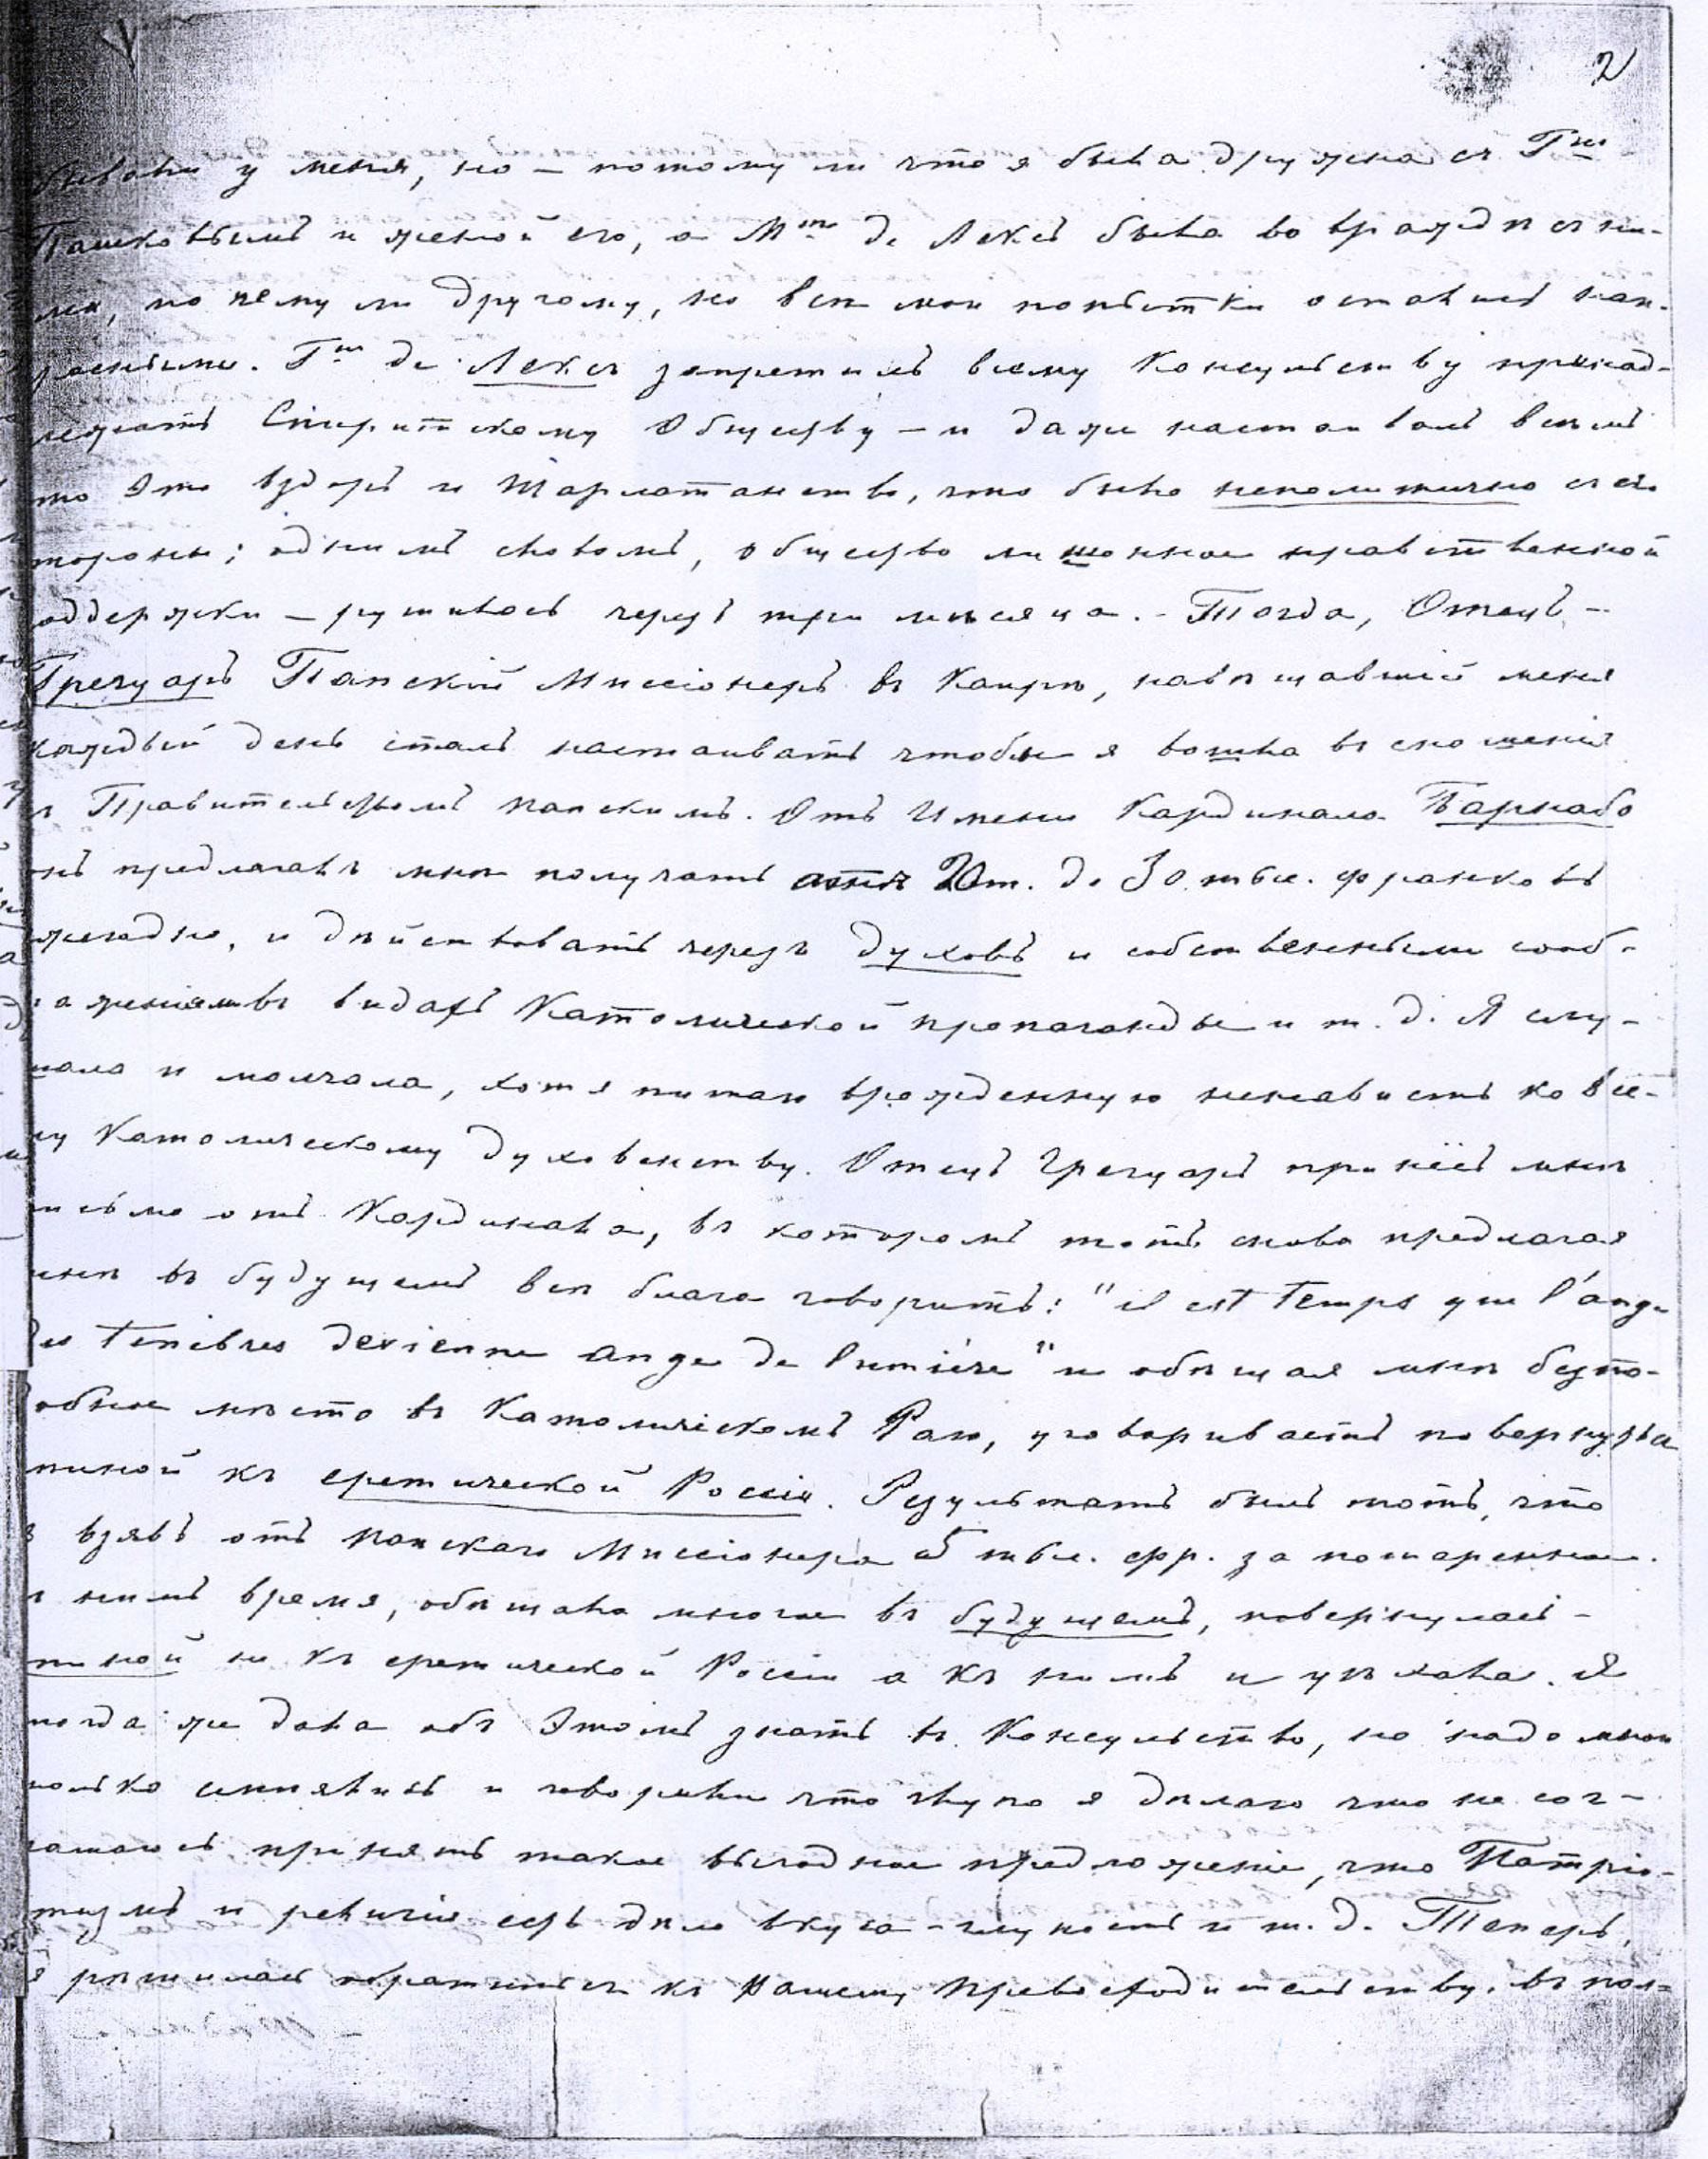 Письмо Е.П.Блаватской 26 декабря 1872г. Автограф, лист 2